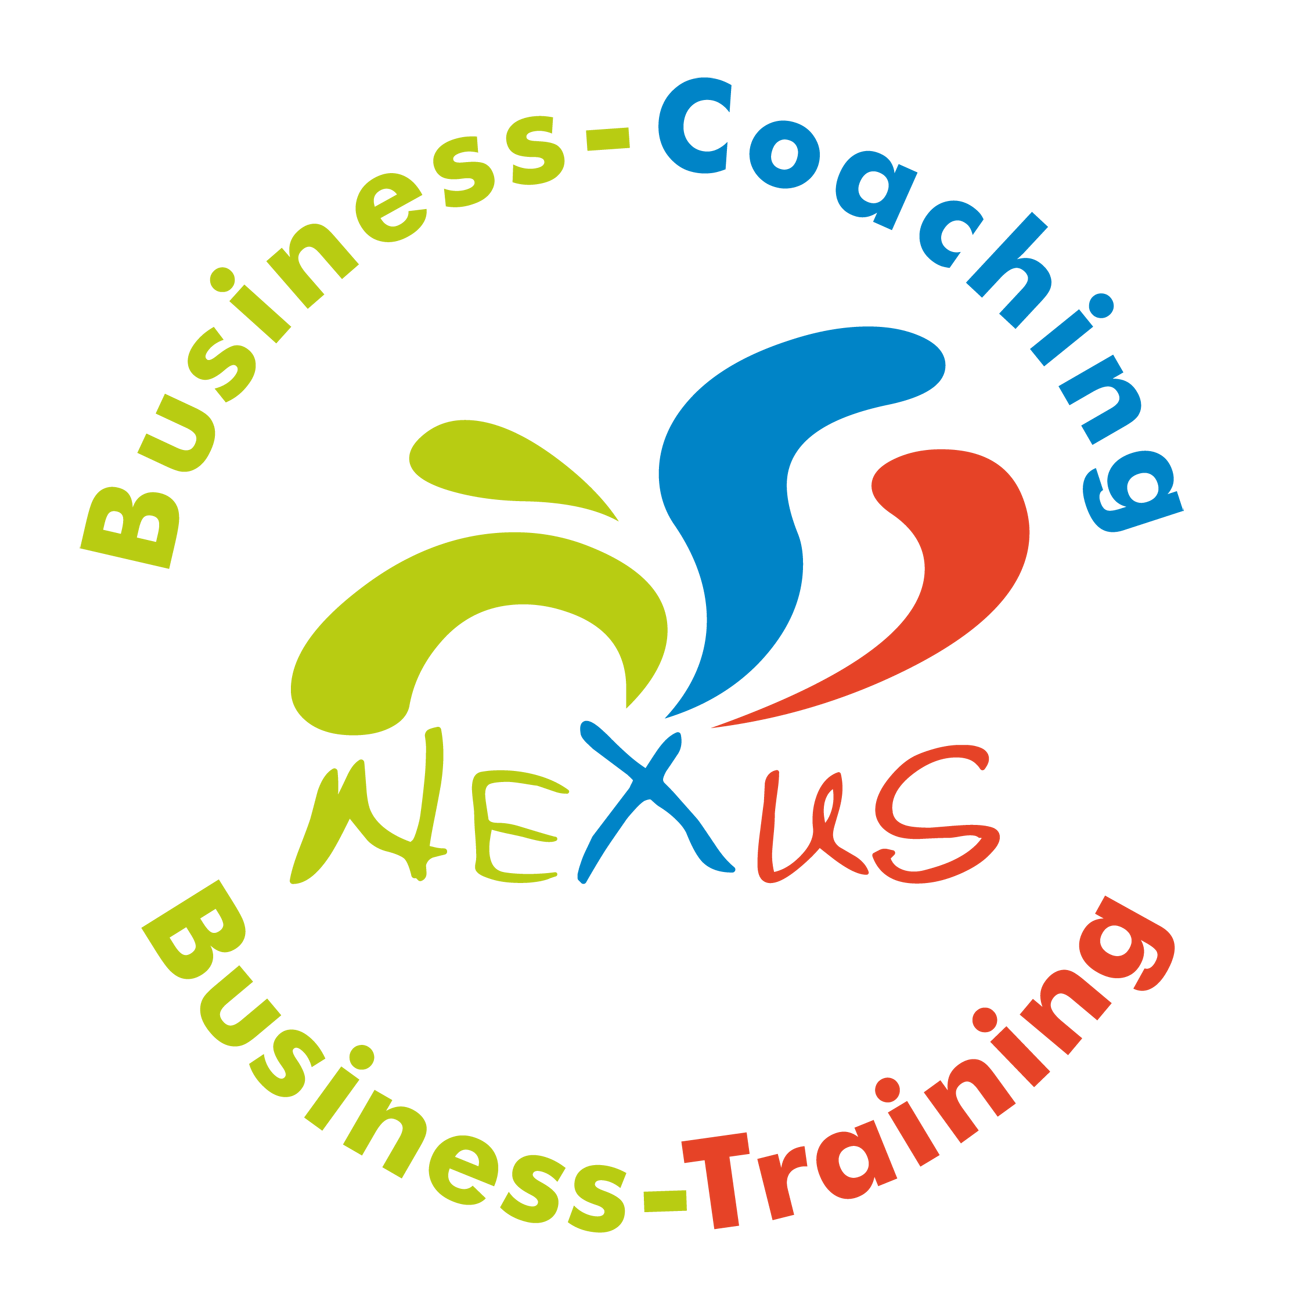 Business-Coaching Luxemburg Stadt, Business-Einzelcoaching, Business-Training, Führungskräfte-Coaching Luxemburg Stadt, Führungskräfte-Training, Kommunikationstraining, Persönlichkeitstraining